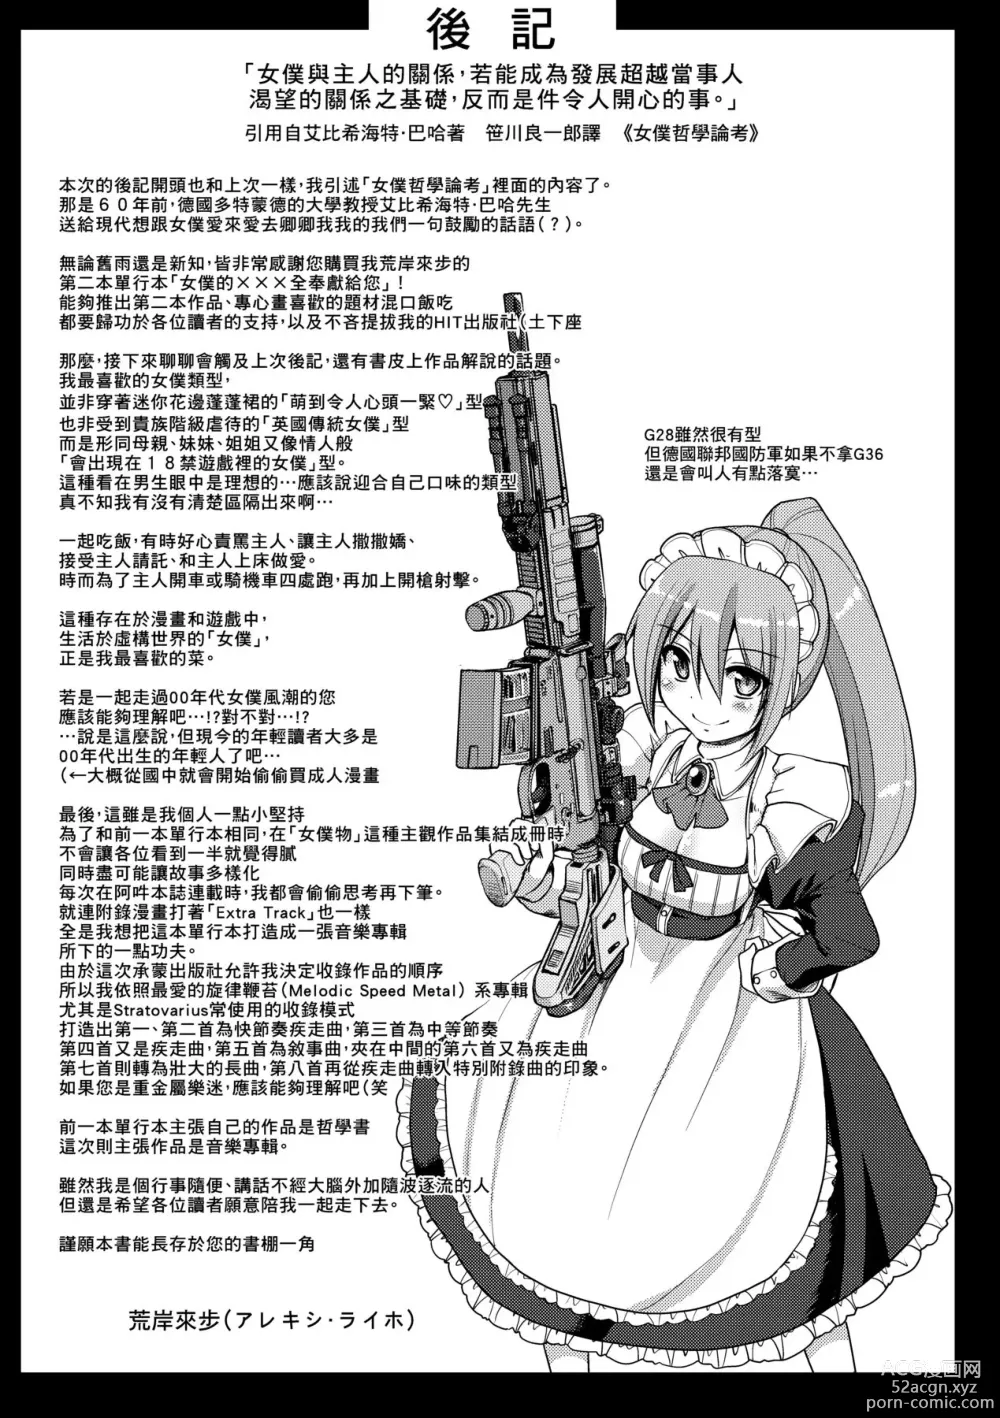 Page 210 of manga Maid no XXX wa Anata no Tame ni (decensored)